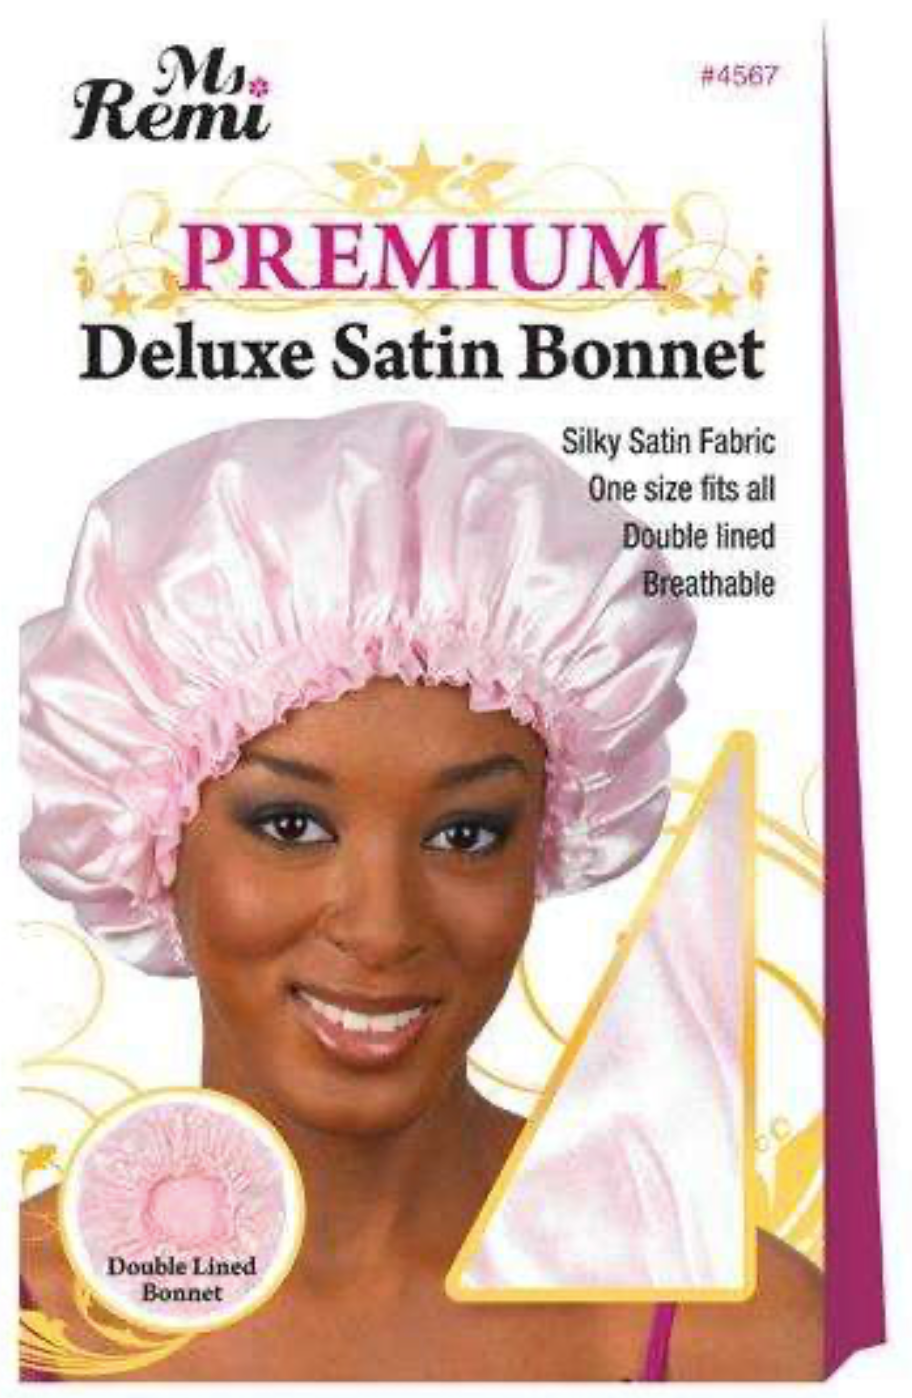 Annie Ms. Remi Deluxe Satin Bonnet Asst Color 04566